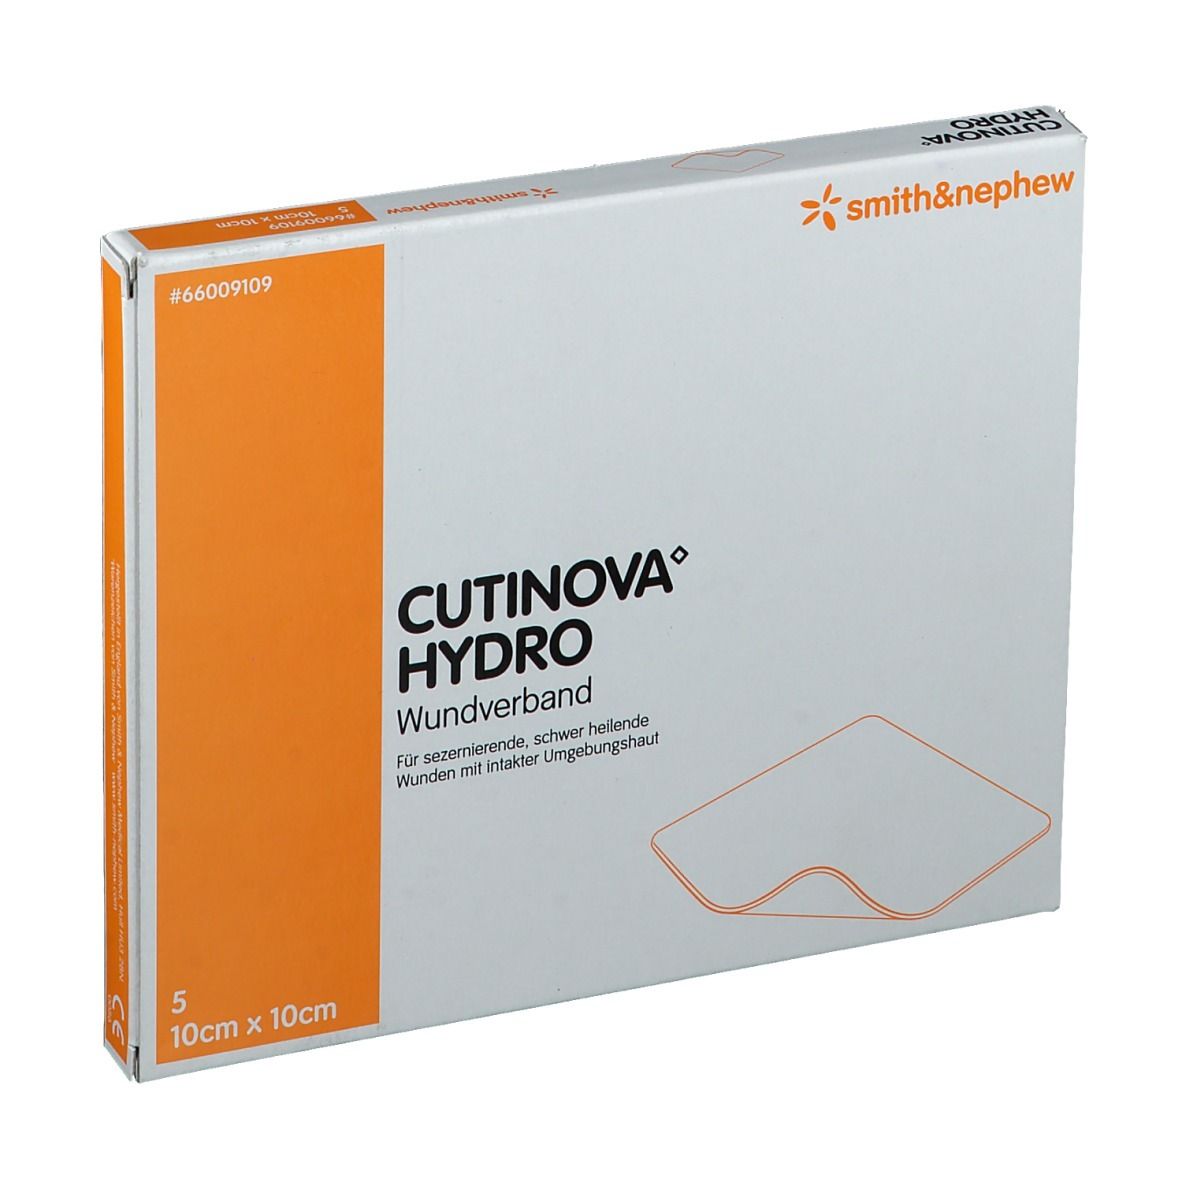 Cutinova® Hydro haftende Wundauflage 10x10cm steril